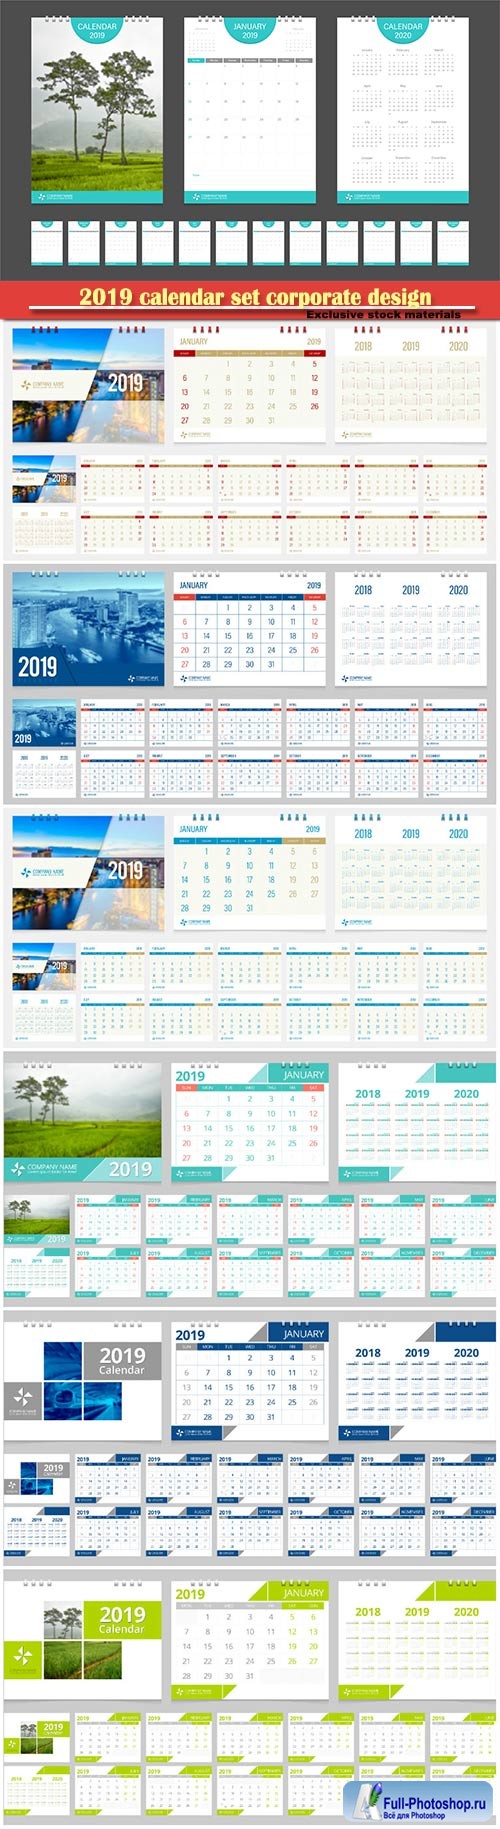 2019 calendar set corporate design template vector